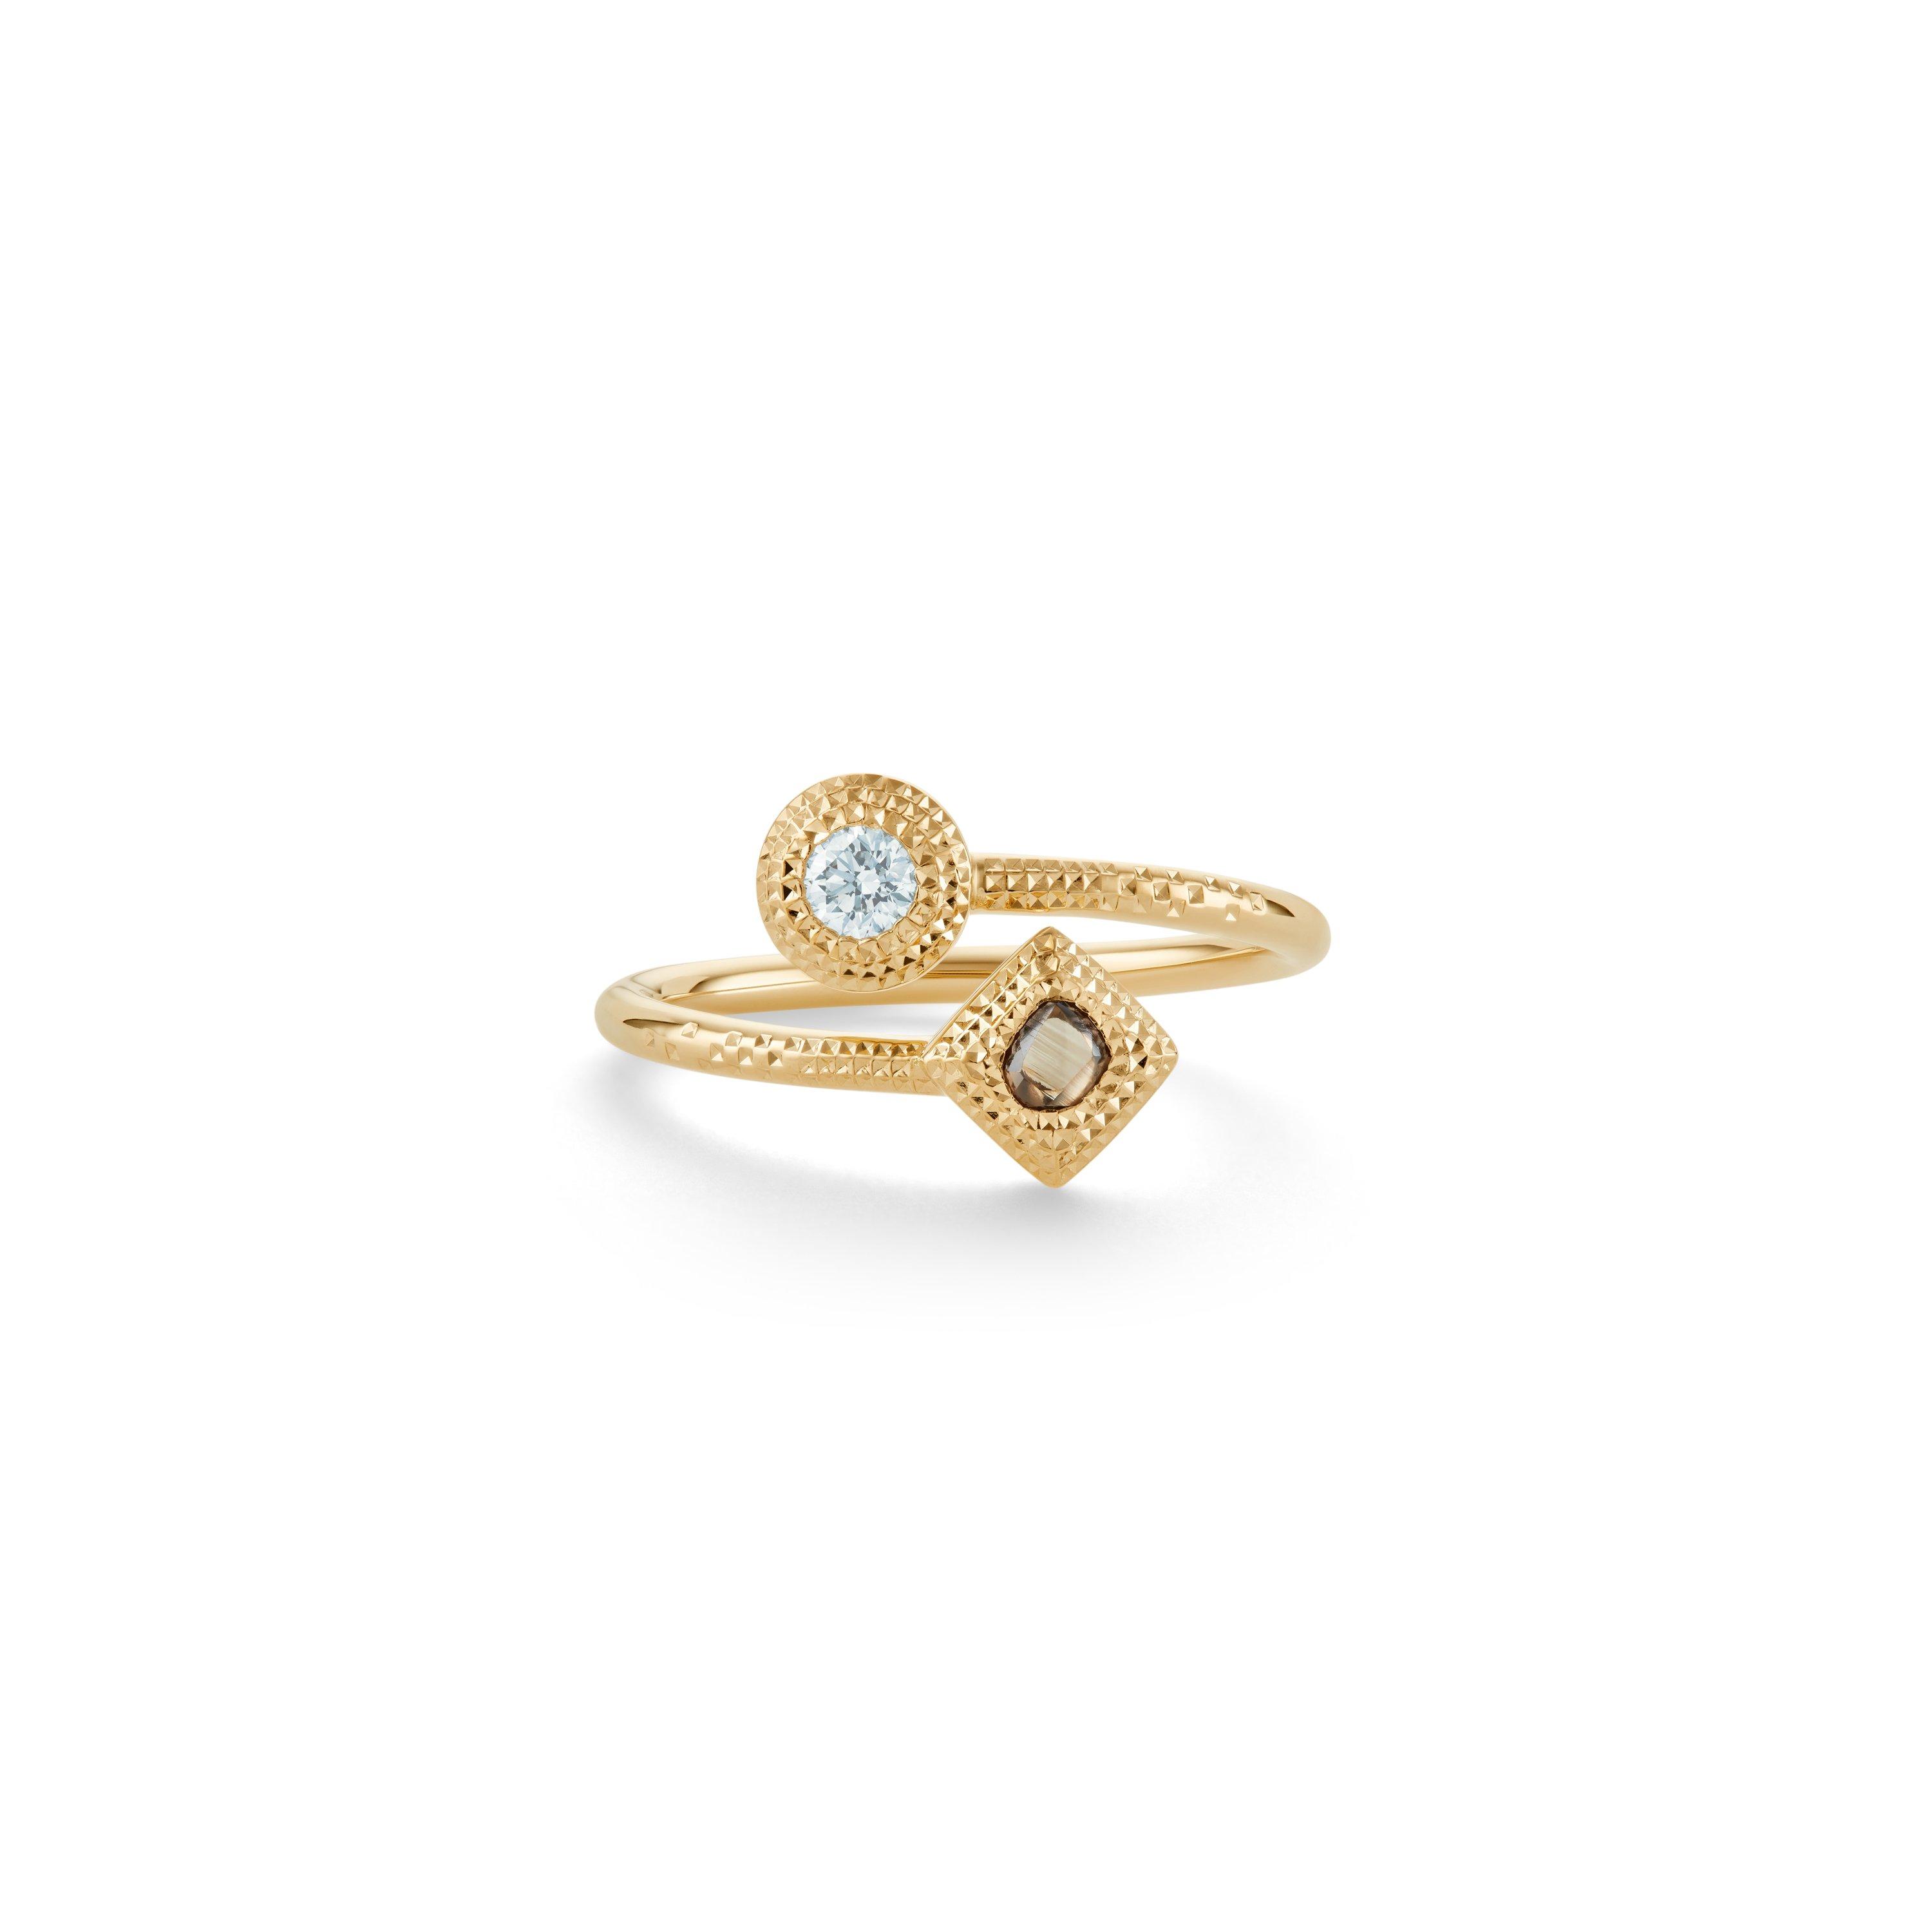 de Beers Jewellers - Large 18kt Yellow Gold Talisman Diamond Ring - Women - Diamond/18kt Yellow Gold - 46